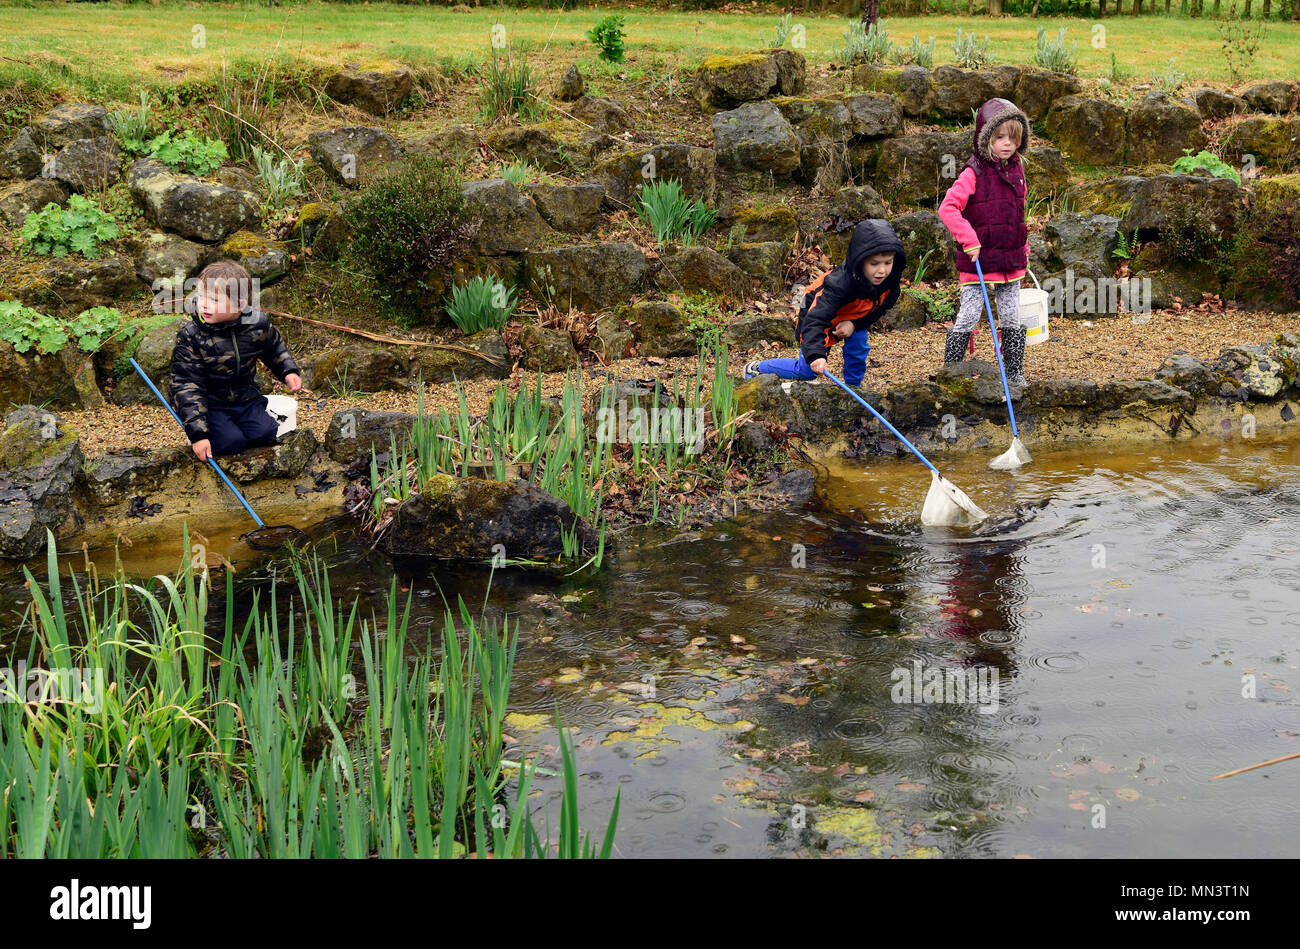 Dans un étang de pêche pour les enfants dans le cadre d'une nature et jardins de la sensibilisation et l'expérience jour, Hindhead, Surrey, UK. 12.05.2018. Banque D'Images